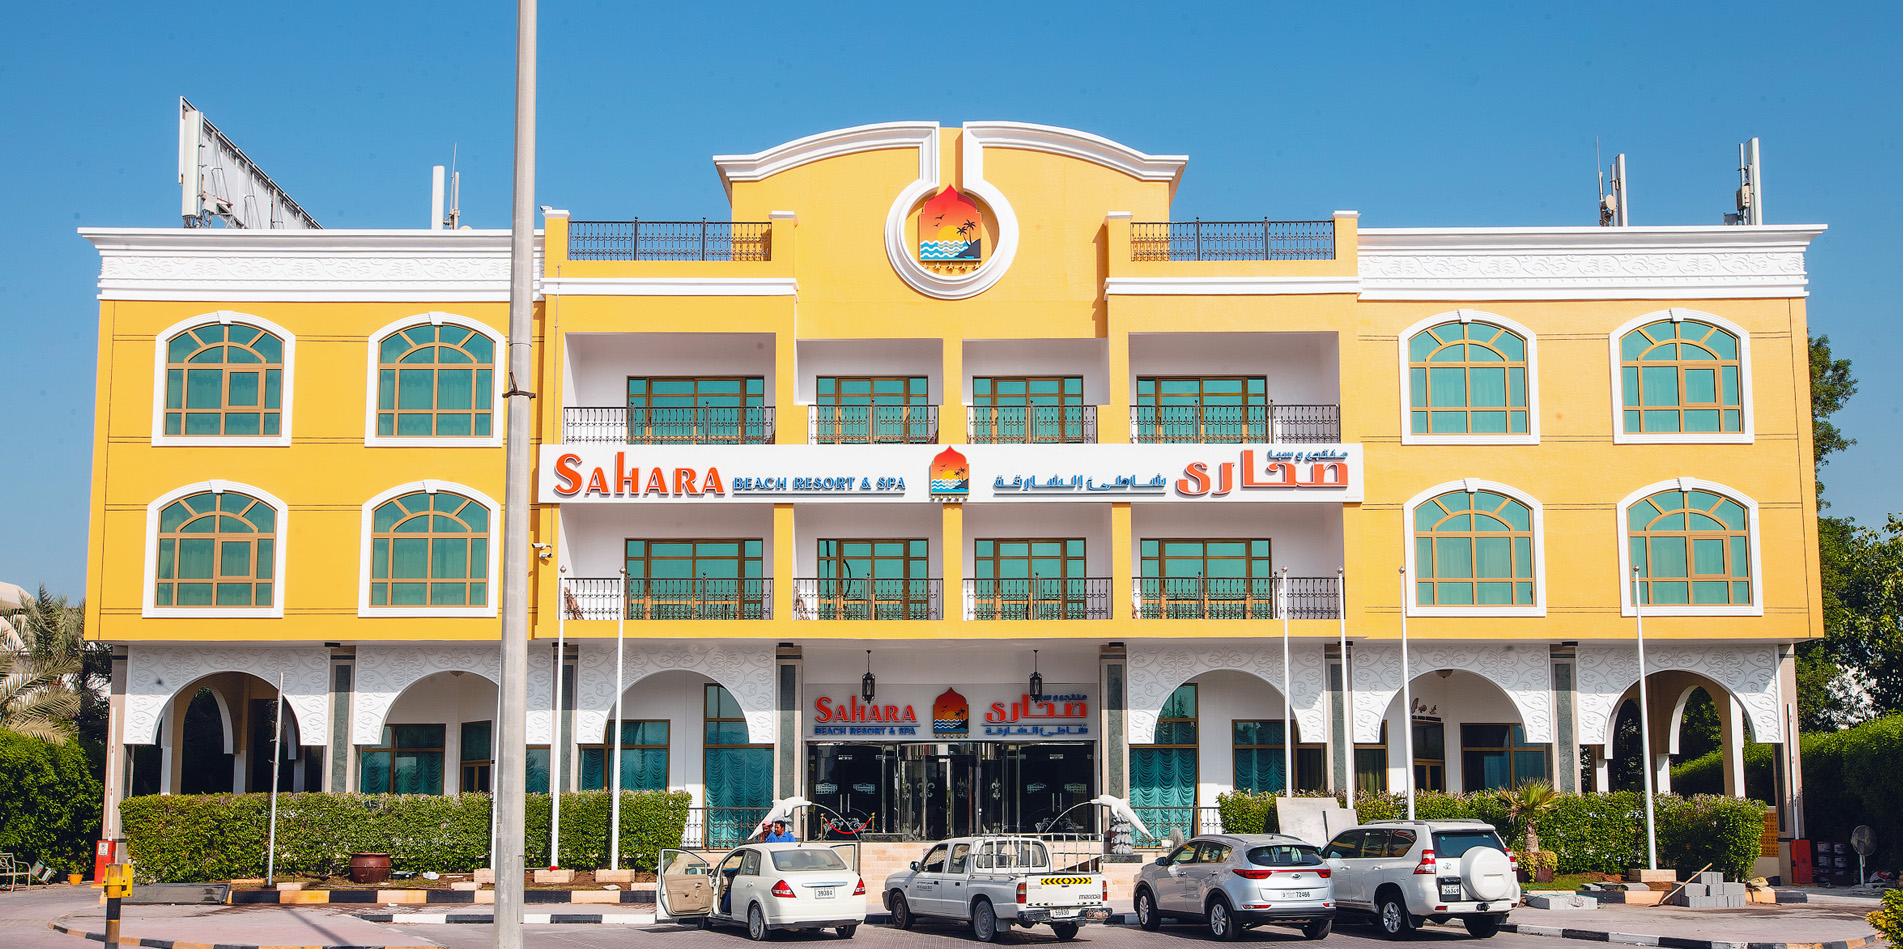 Sahara Beach Resort & Spa  5*